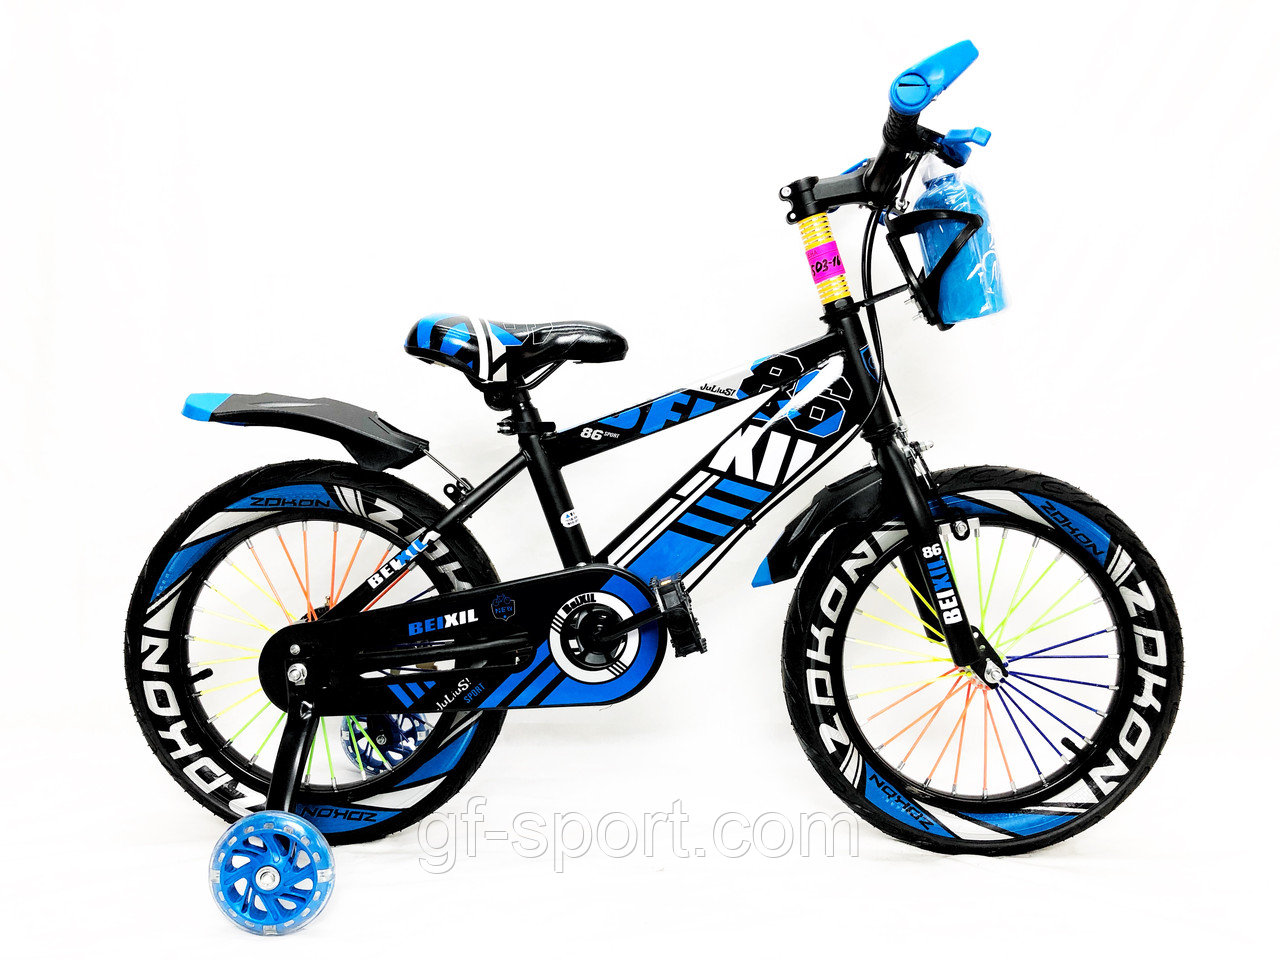 Велосипед BeixiL синий оригинал детский с холостым ходом 14 размер (503-14)